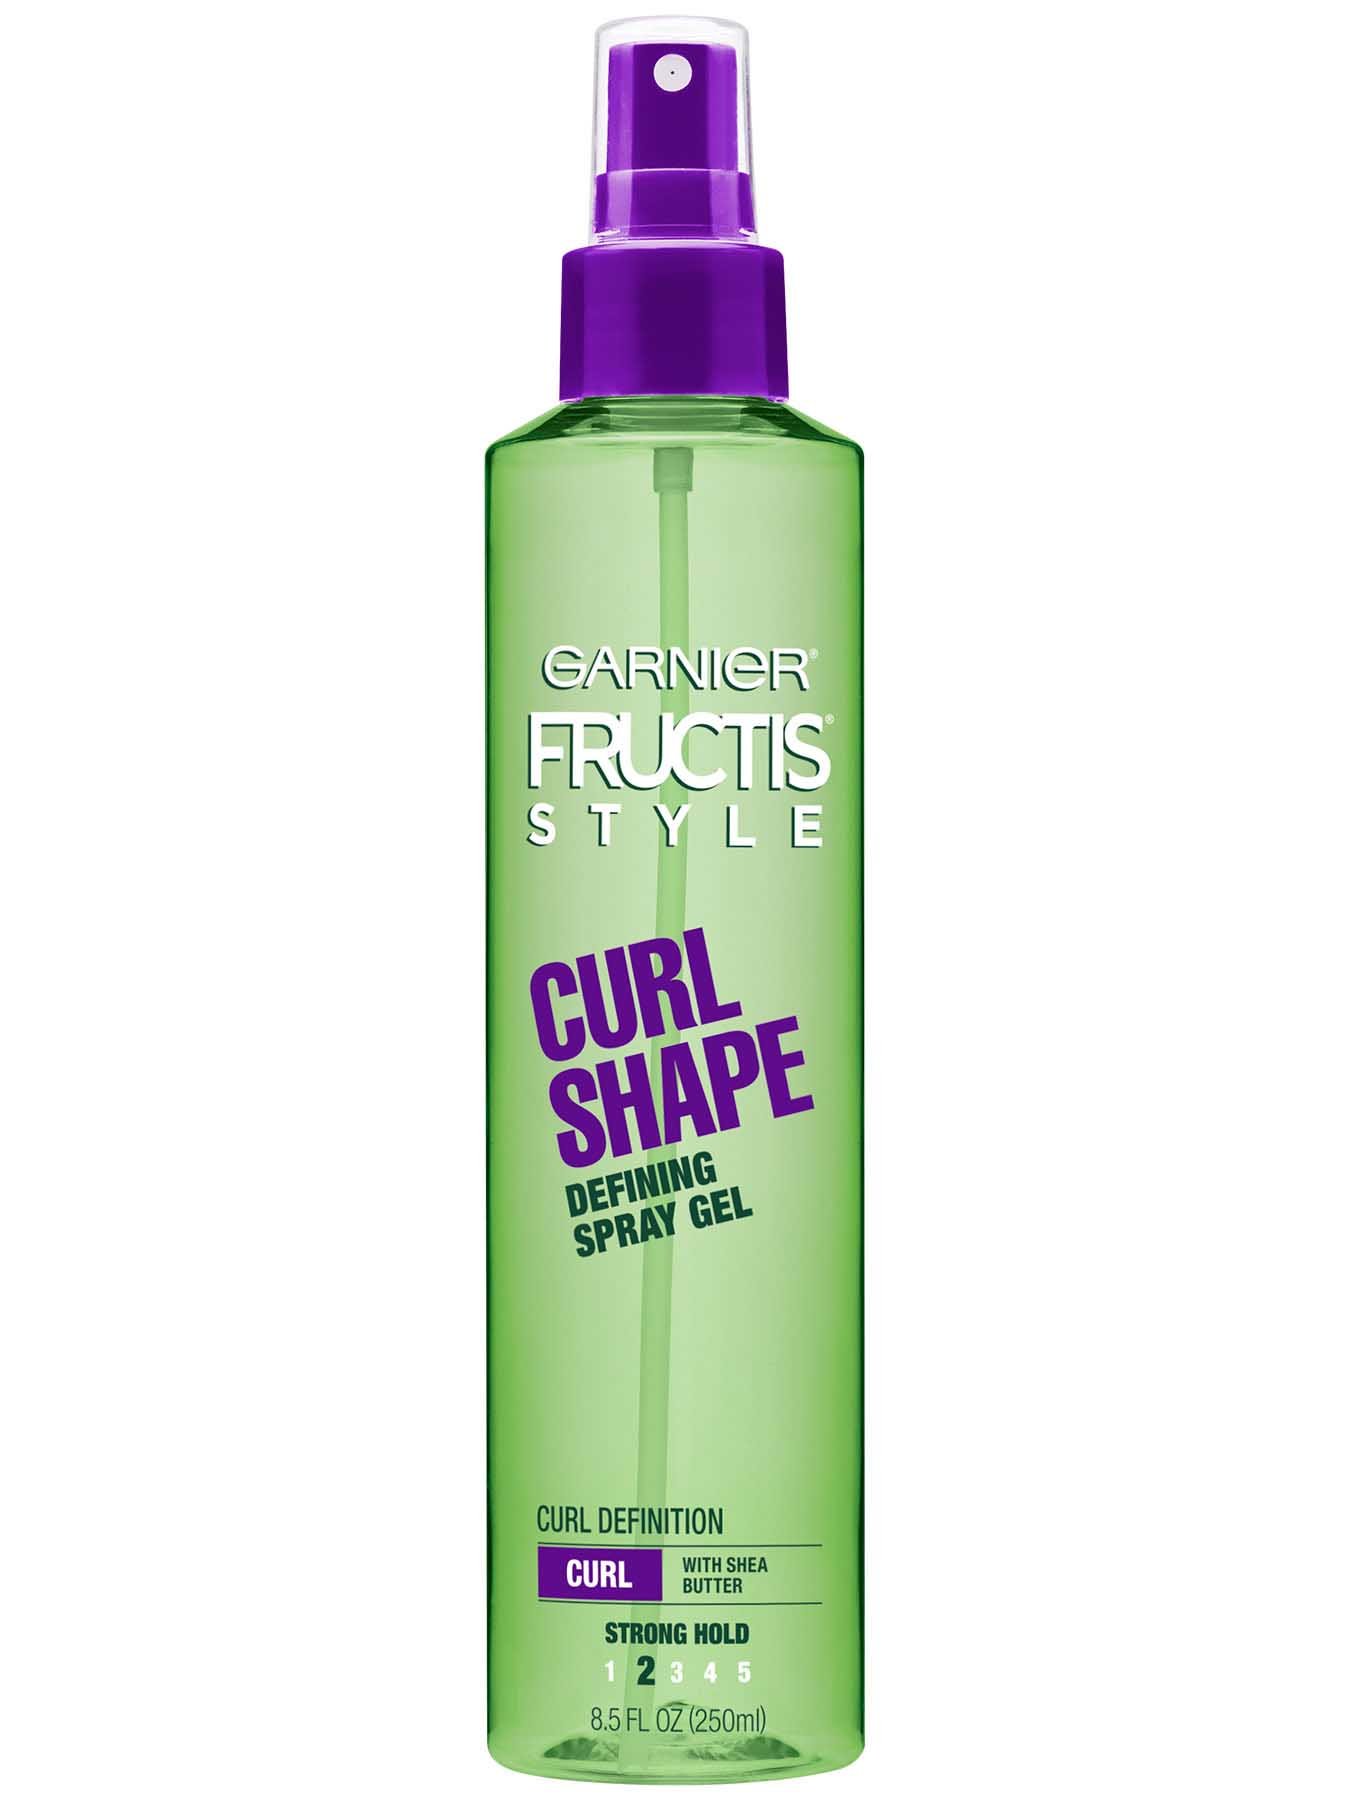 Curl Shaping Spray Gel - Curl Definition - Garnier Fructis 